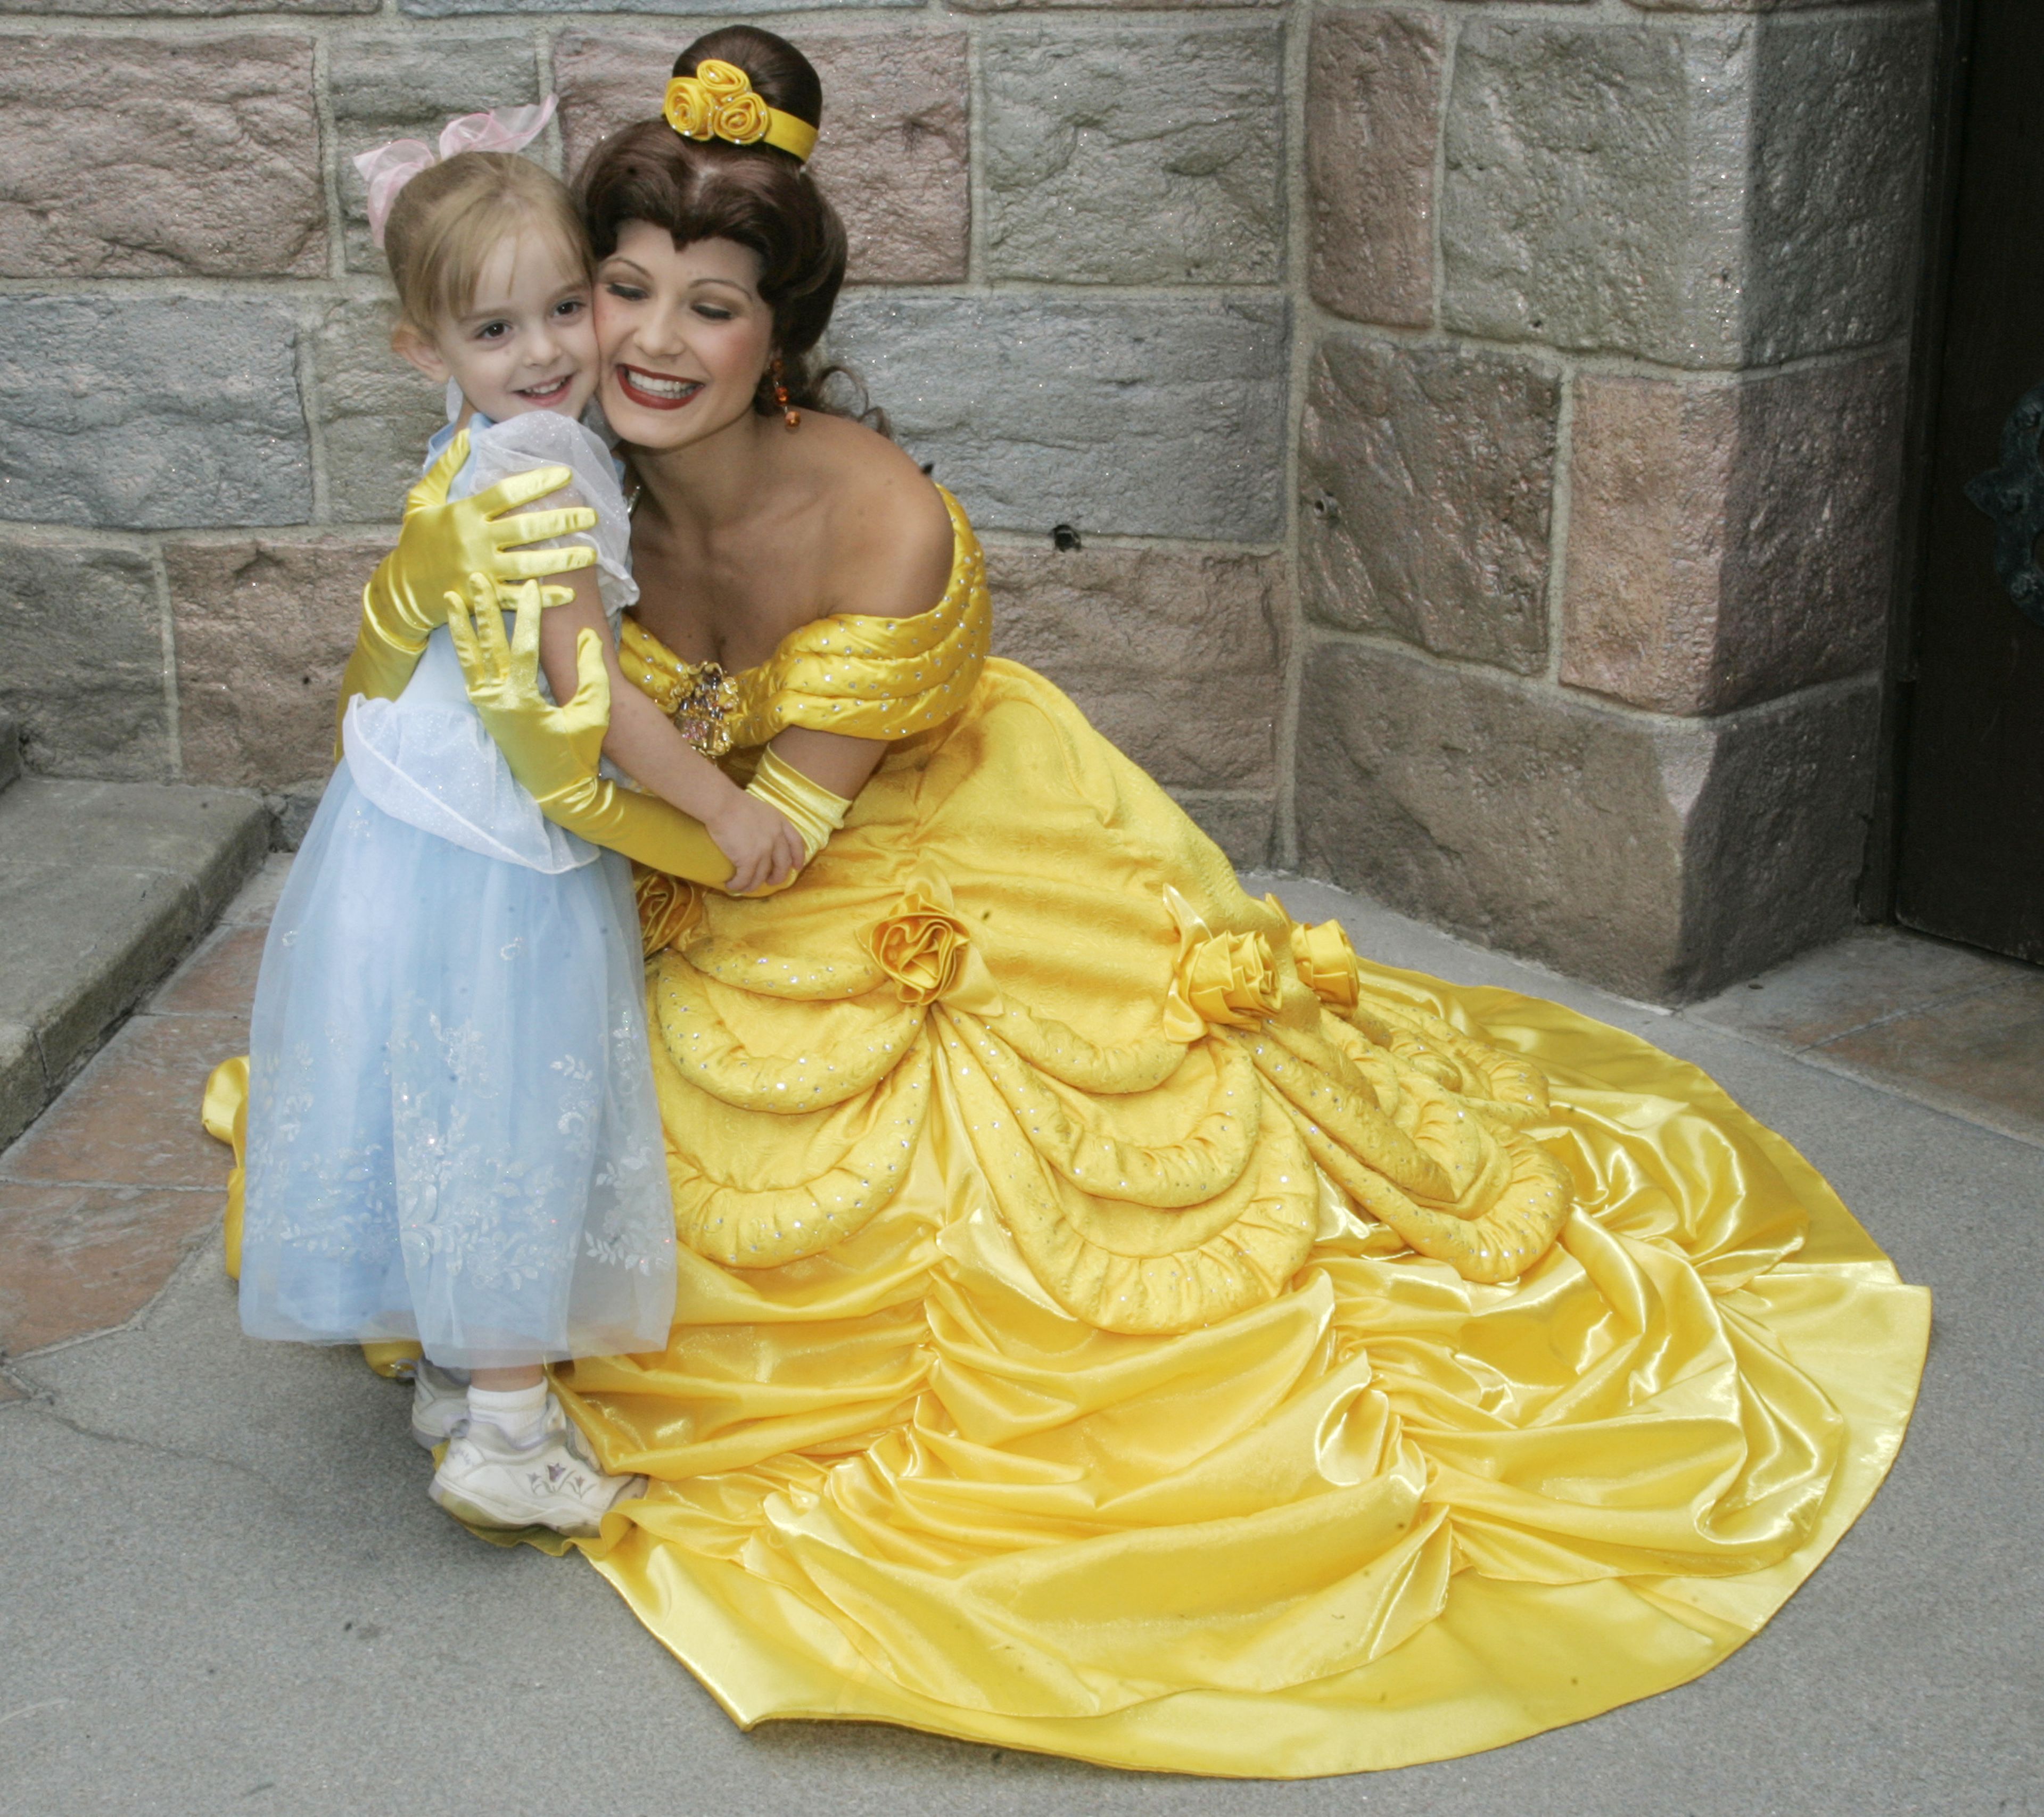 Una niña abraza en Disneyland a una princesa Disney